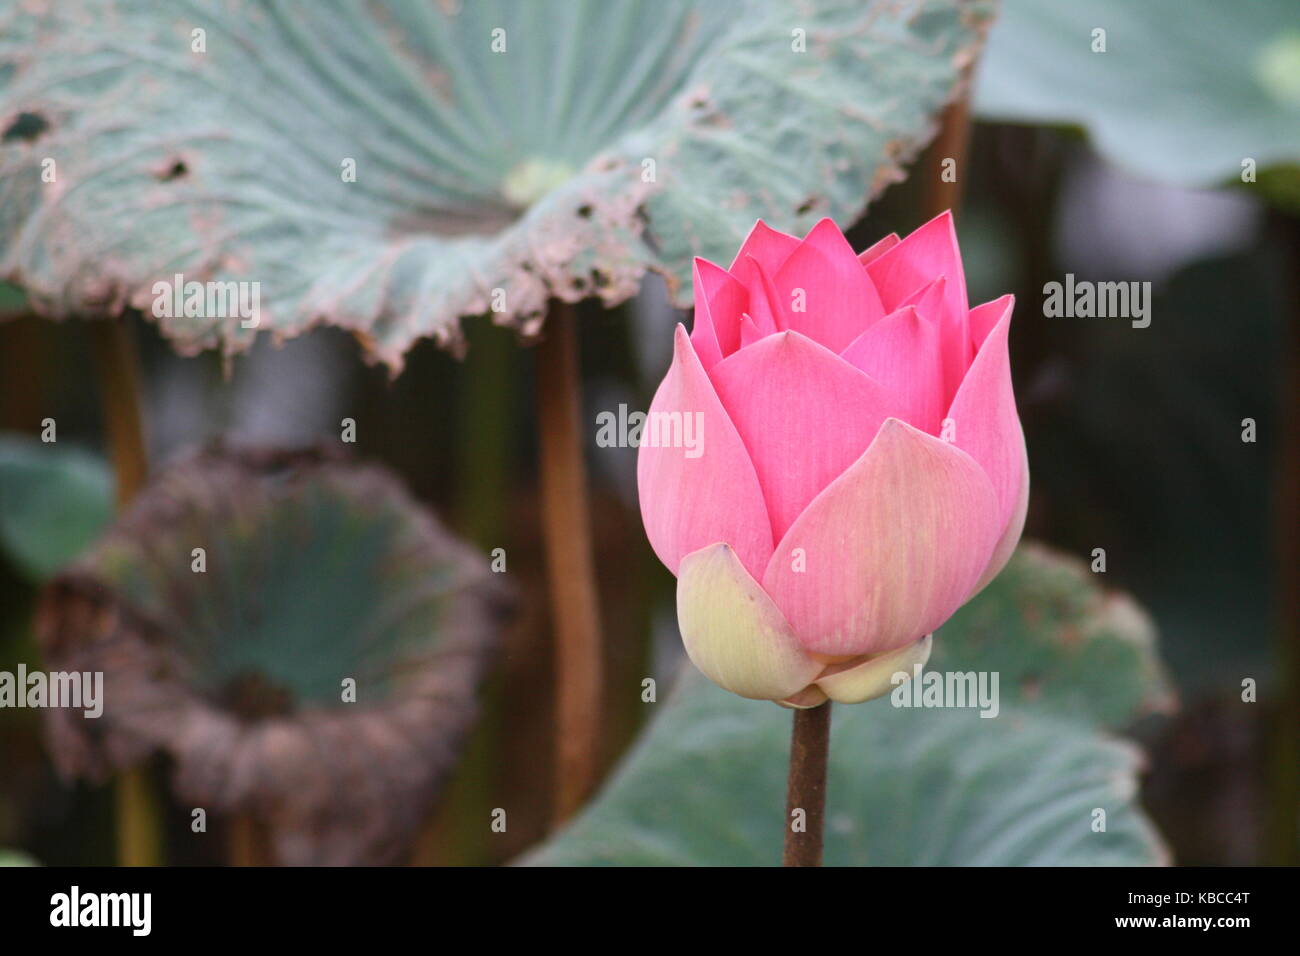 Halb geöffnete Lotosblume mit blatt im Hintergrund Stock Photo